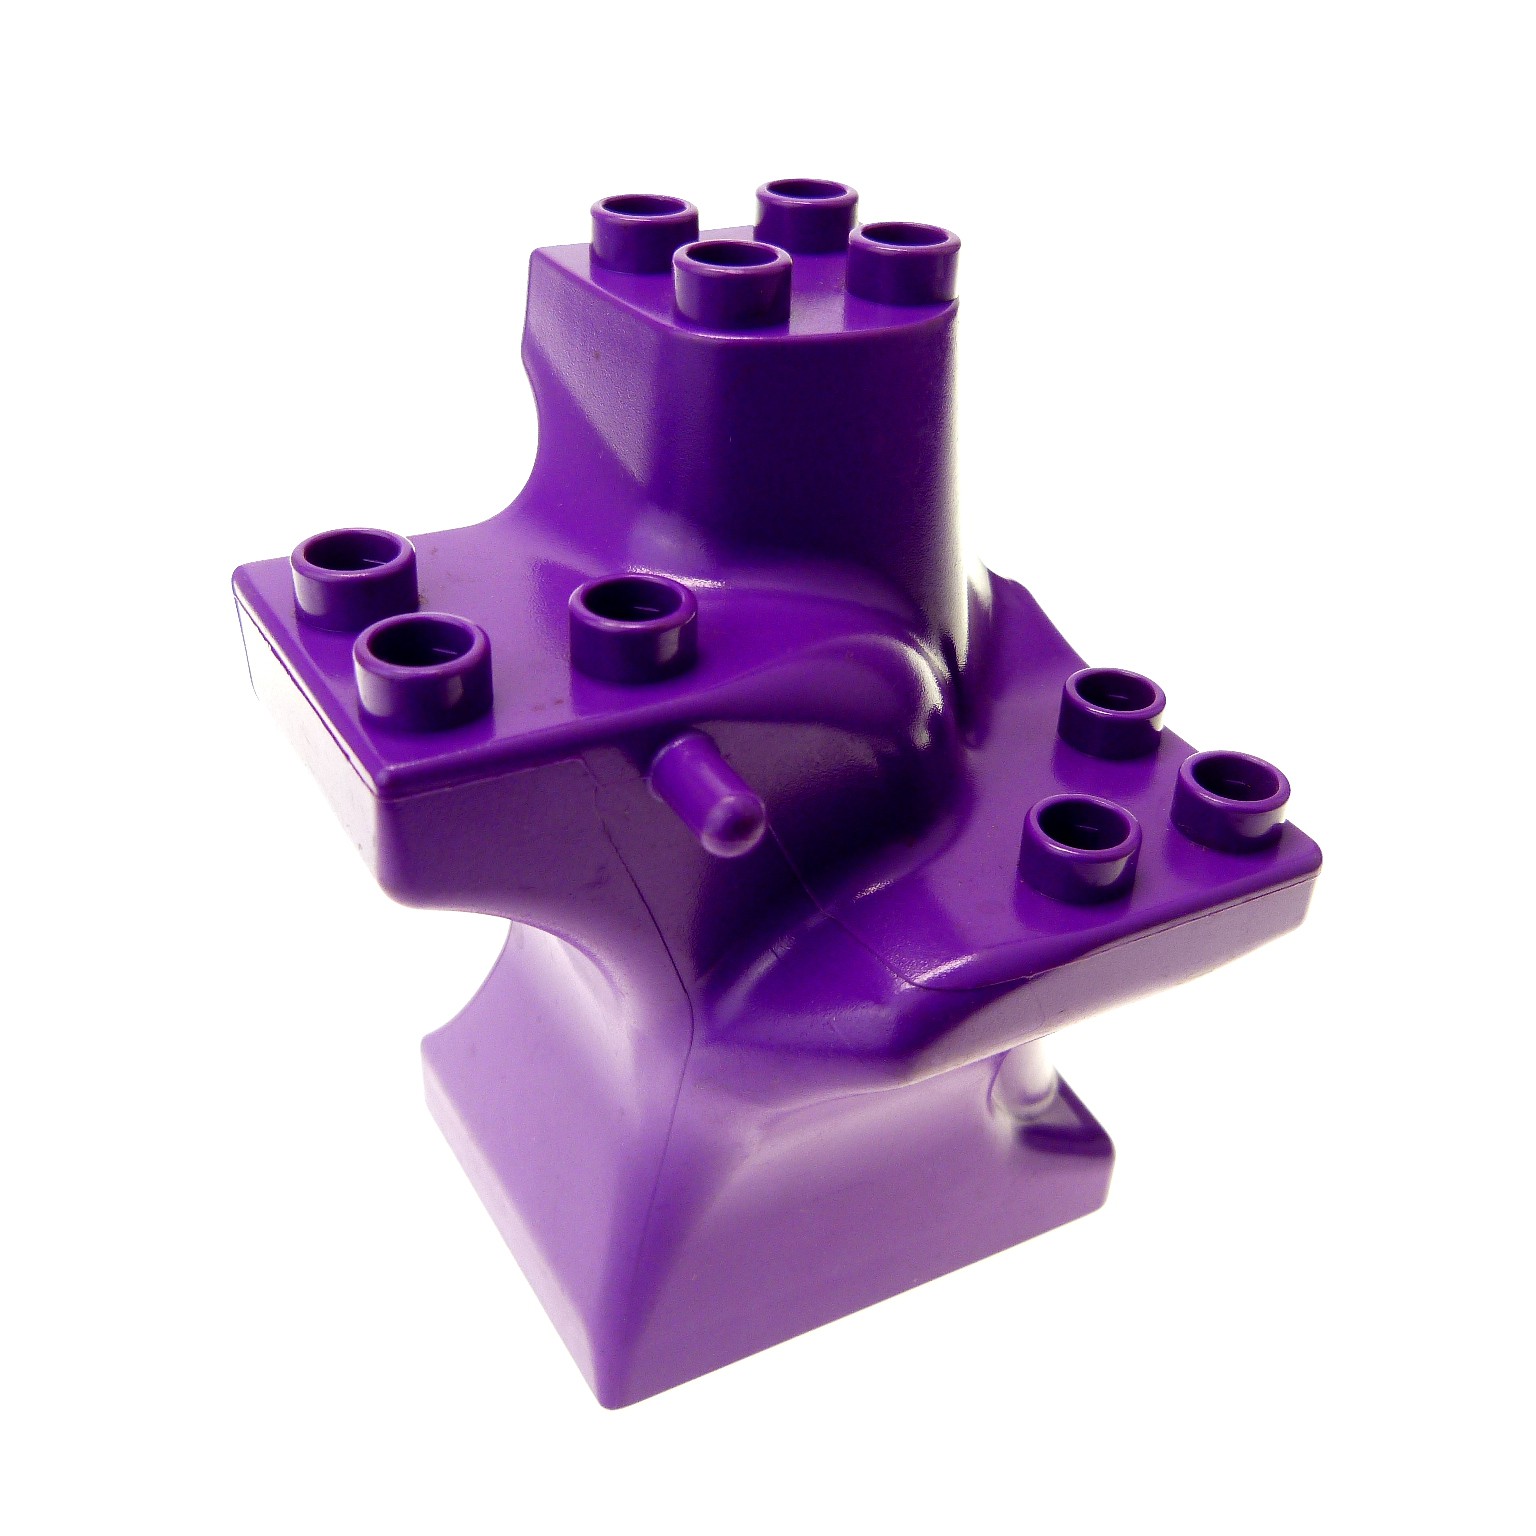 1x Lego Duplo Dach lila violett 4x4 Base gelb 2990 Winnie The Pooh 4860c04